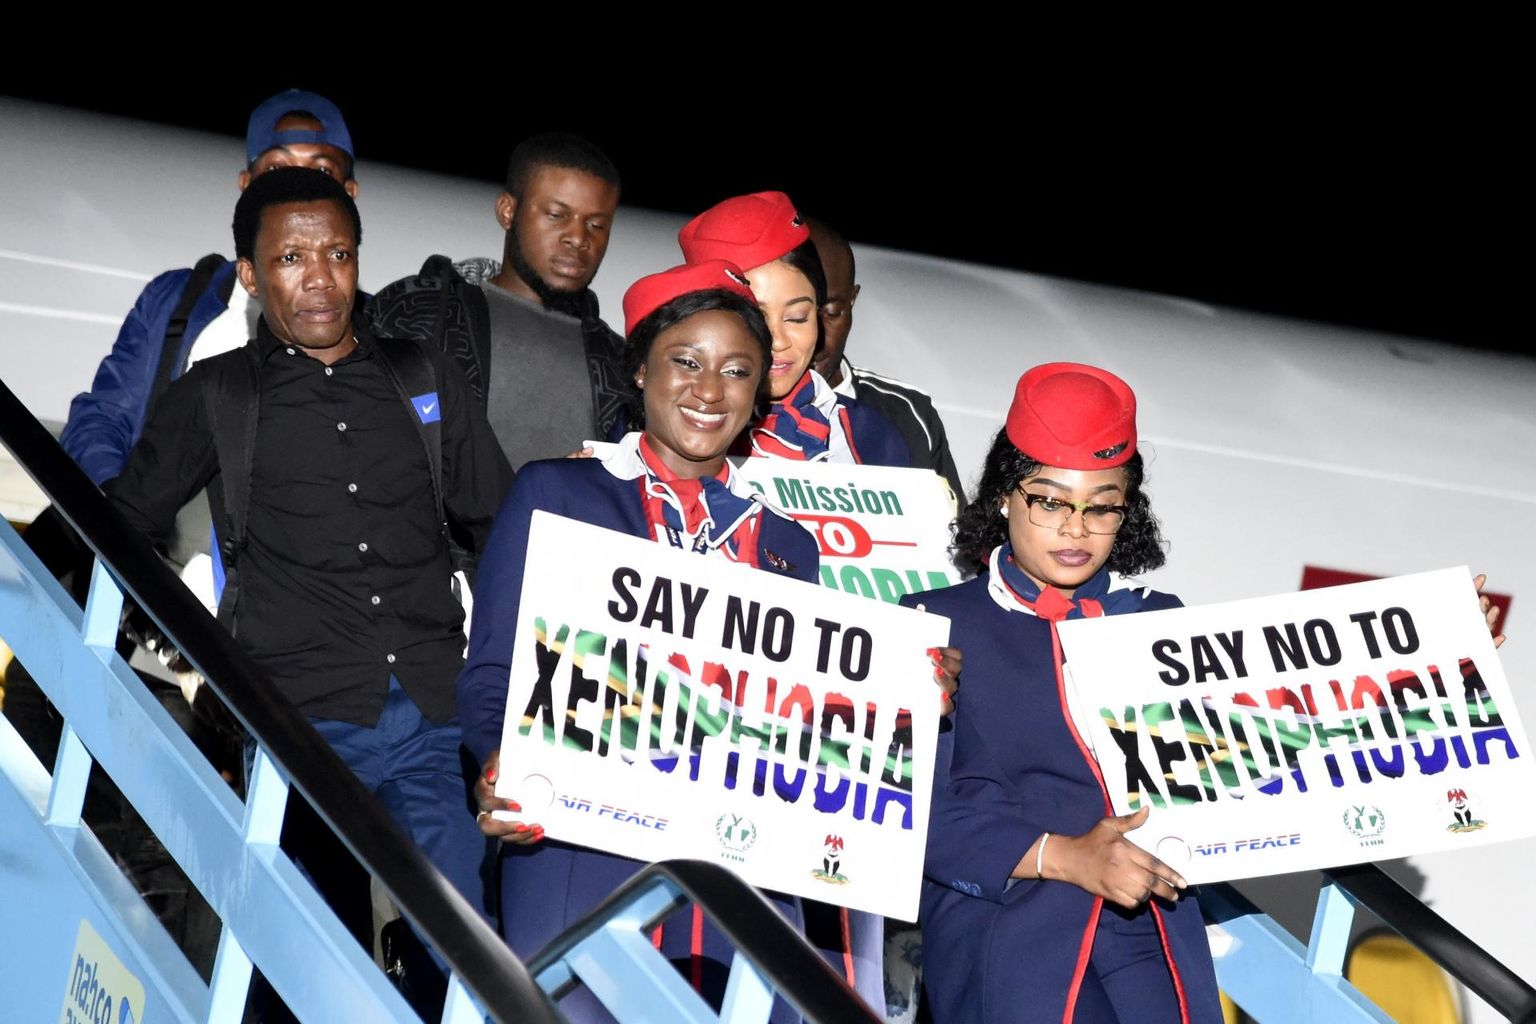 Lõuna-Aafrika Vabariigis rünnaku ohvriks sattunud nigeerlasi kodumaale toimetava lennufirma Air Peace lennusaatjad siltidega, mis kutsuvad üles ksenofoobiale vastu astuma.